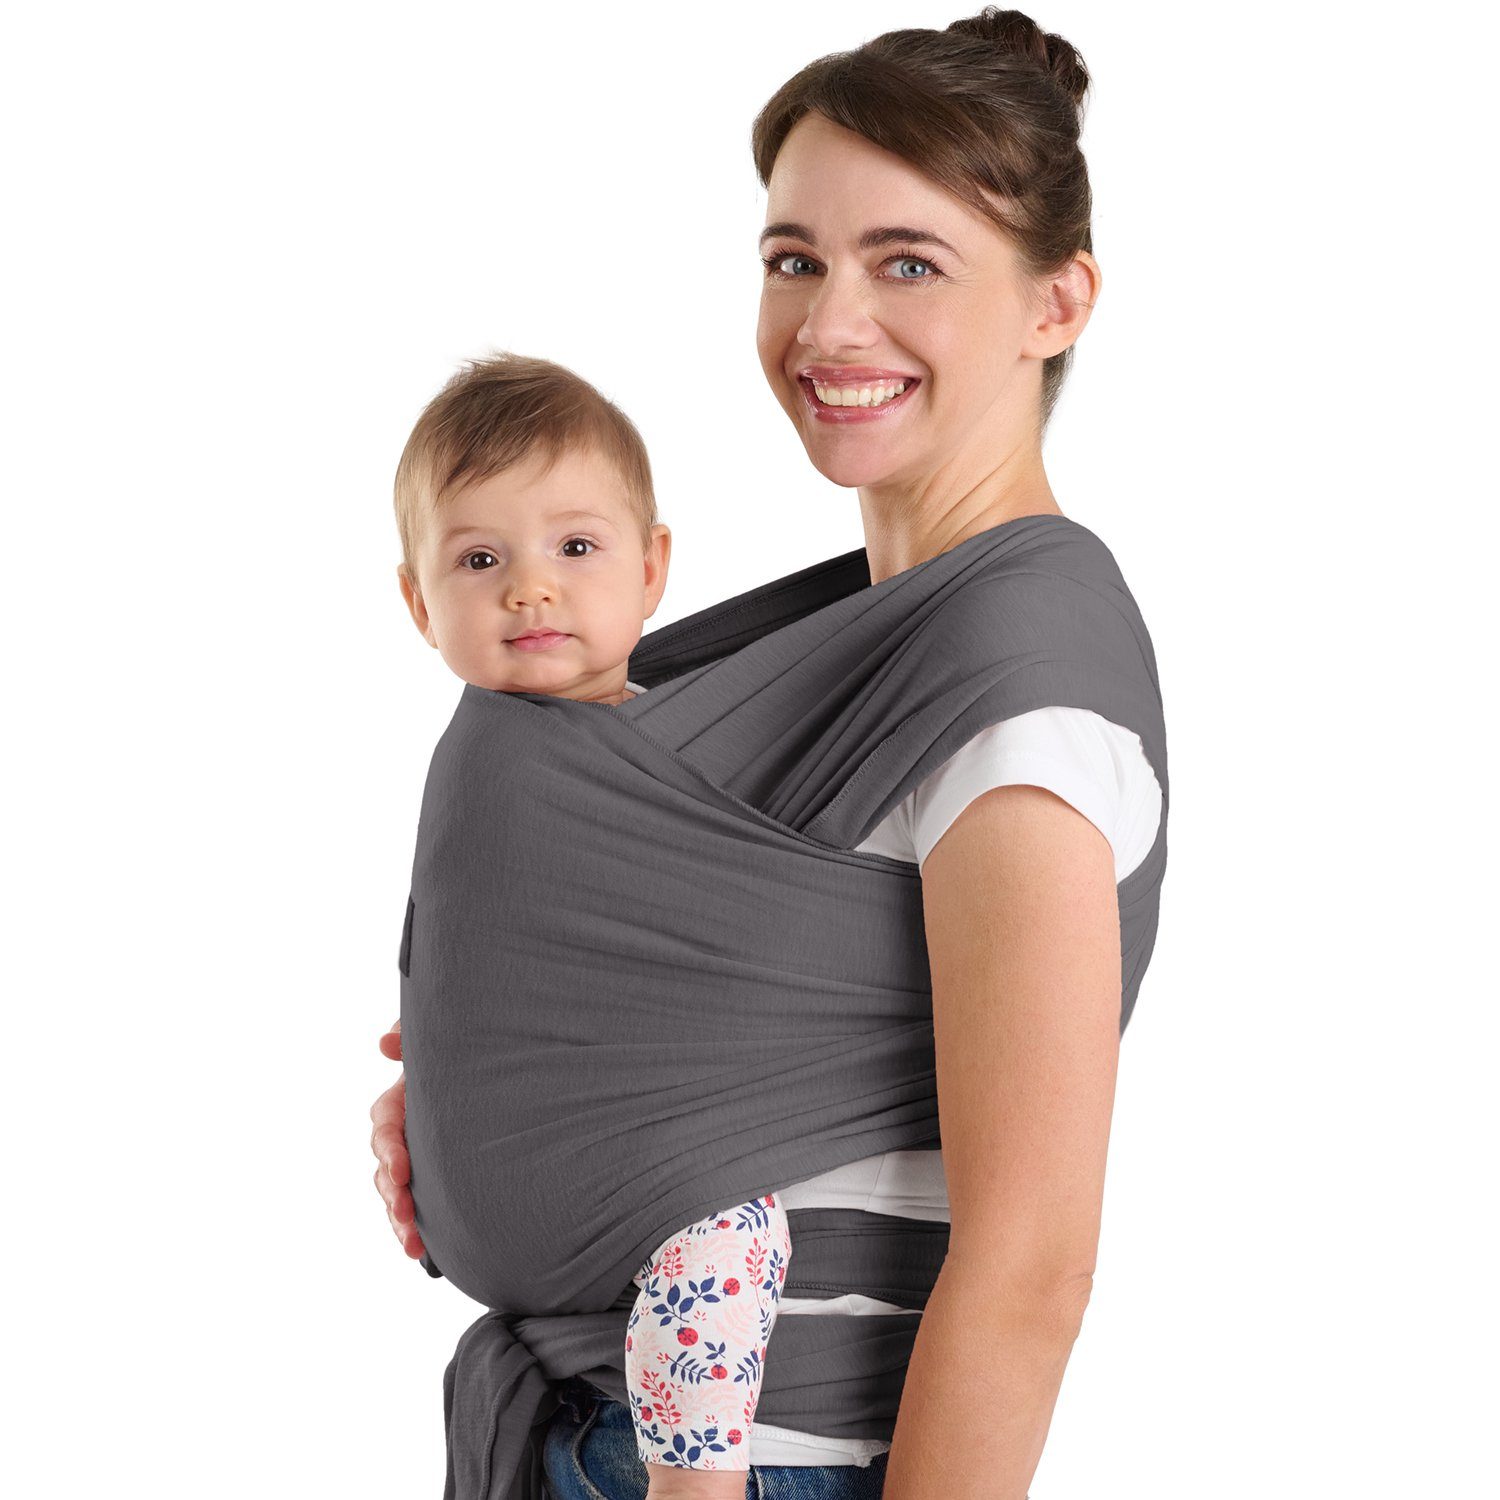 Grau weiche elastisch 100% Tragetuch für bis - Bio-Baumwolle, Neugeborene 16kg Laleni Babytragetuch